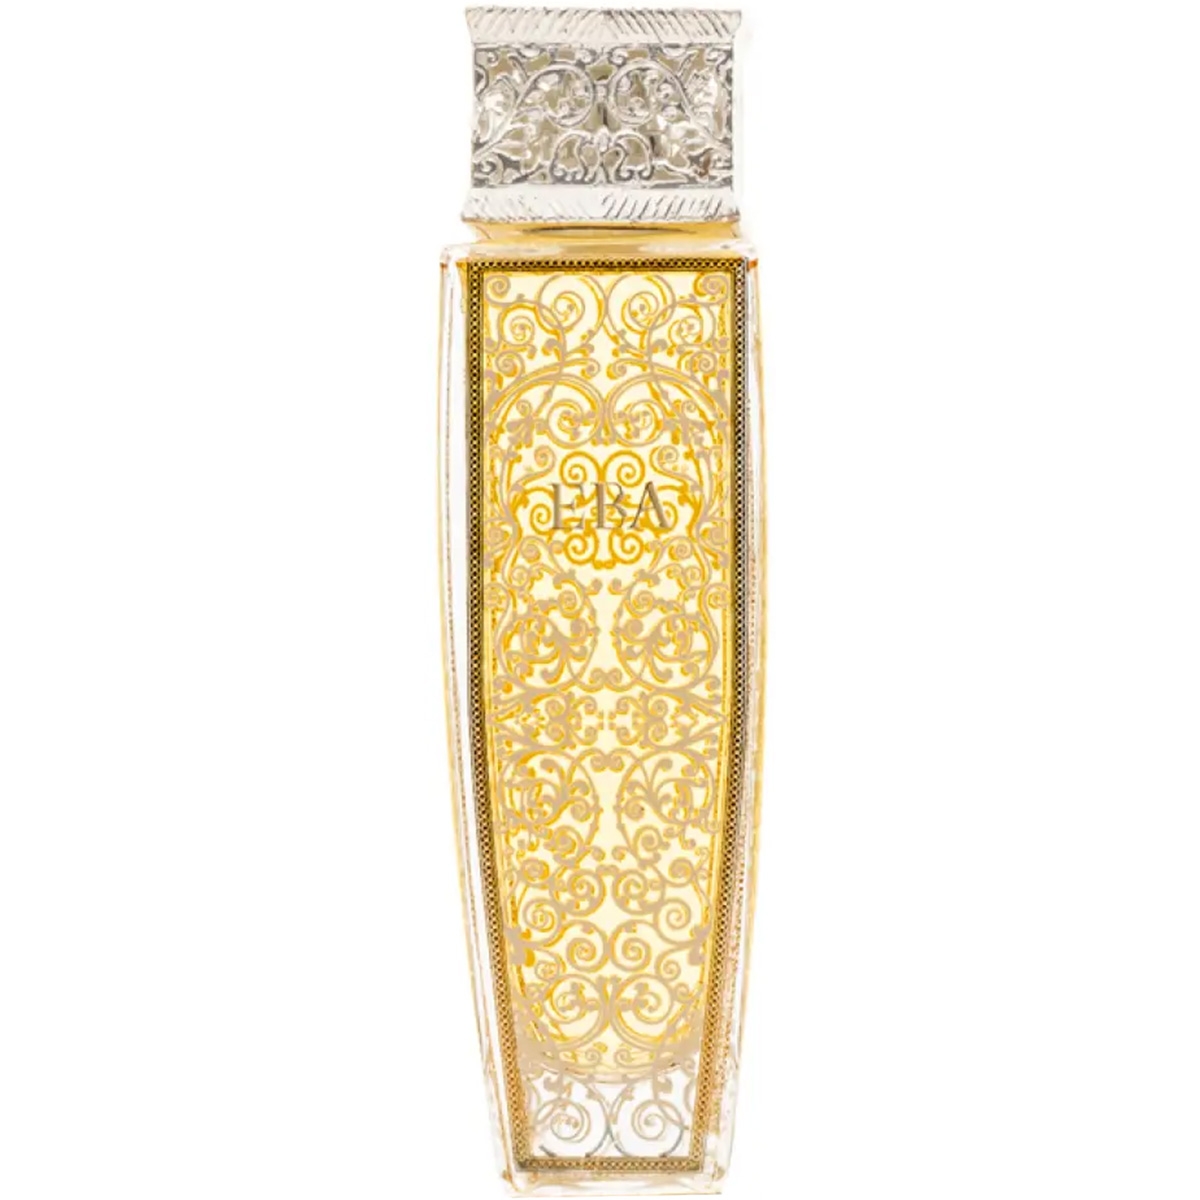 Eba Gold Junaid Perfumes Perfumes, Profumi Unisex, Arada Perfumes